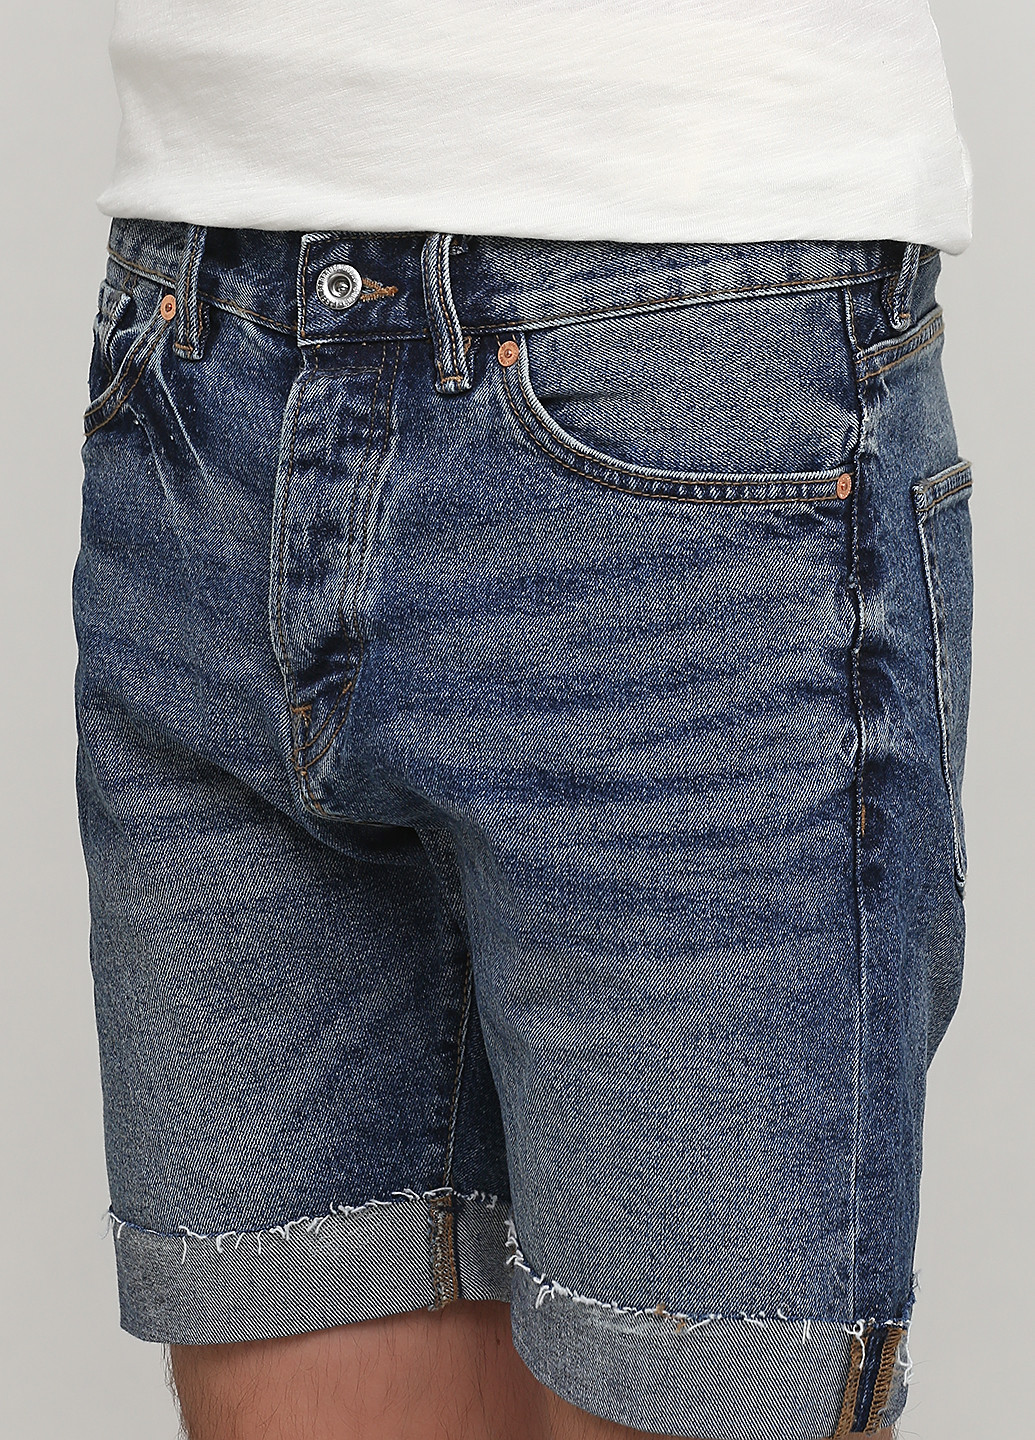 Шорты H&M однотонные тёмно-синие джинсовые хлопок